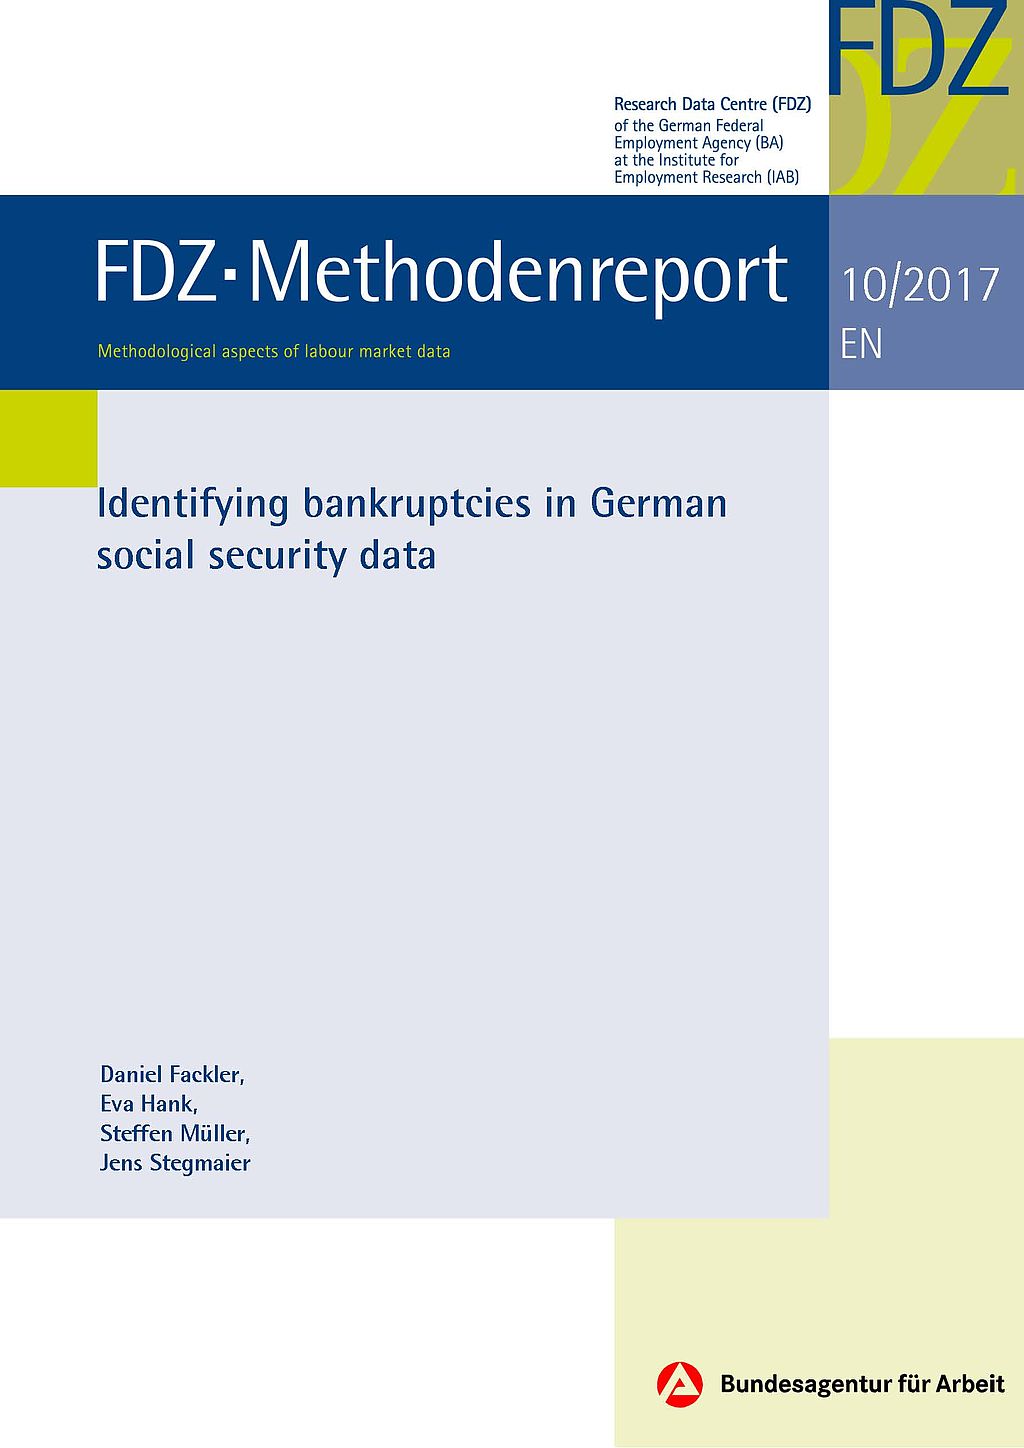 cover_FDZ-Methodenreport_2017-octobe.jpg